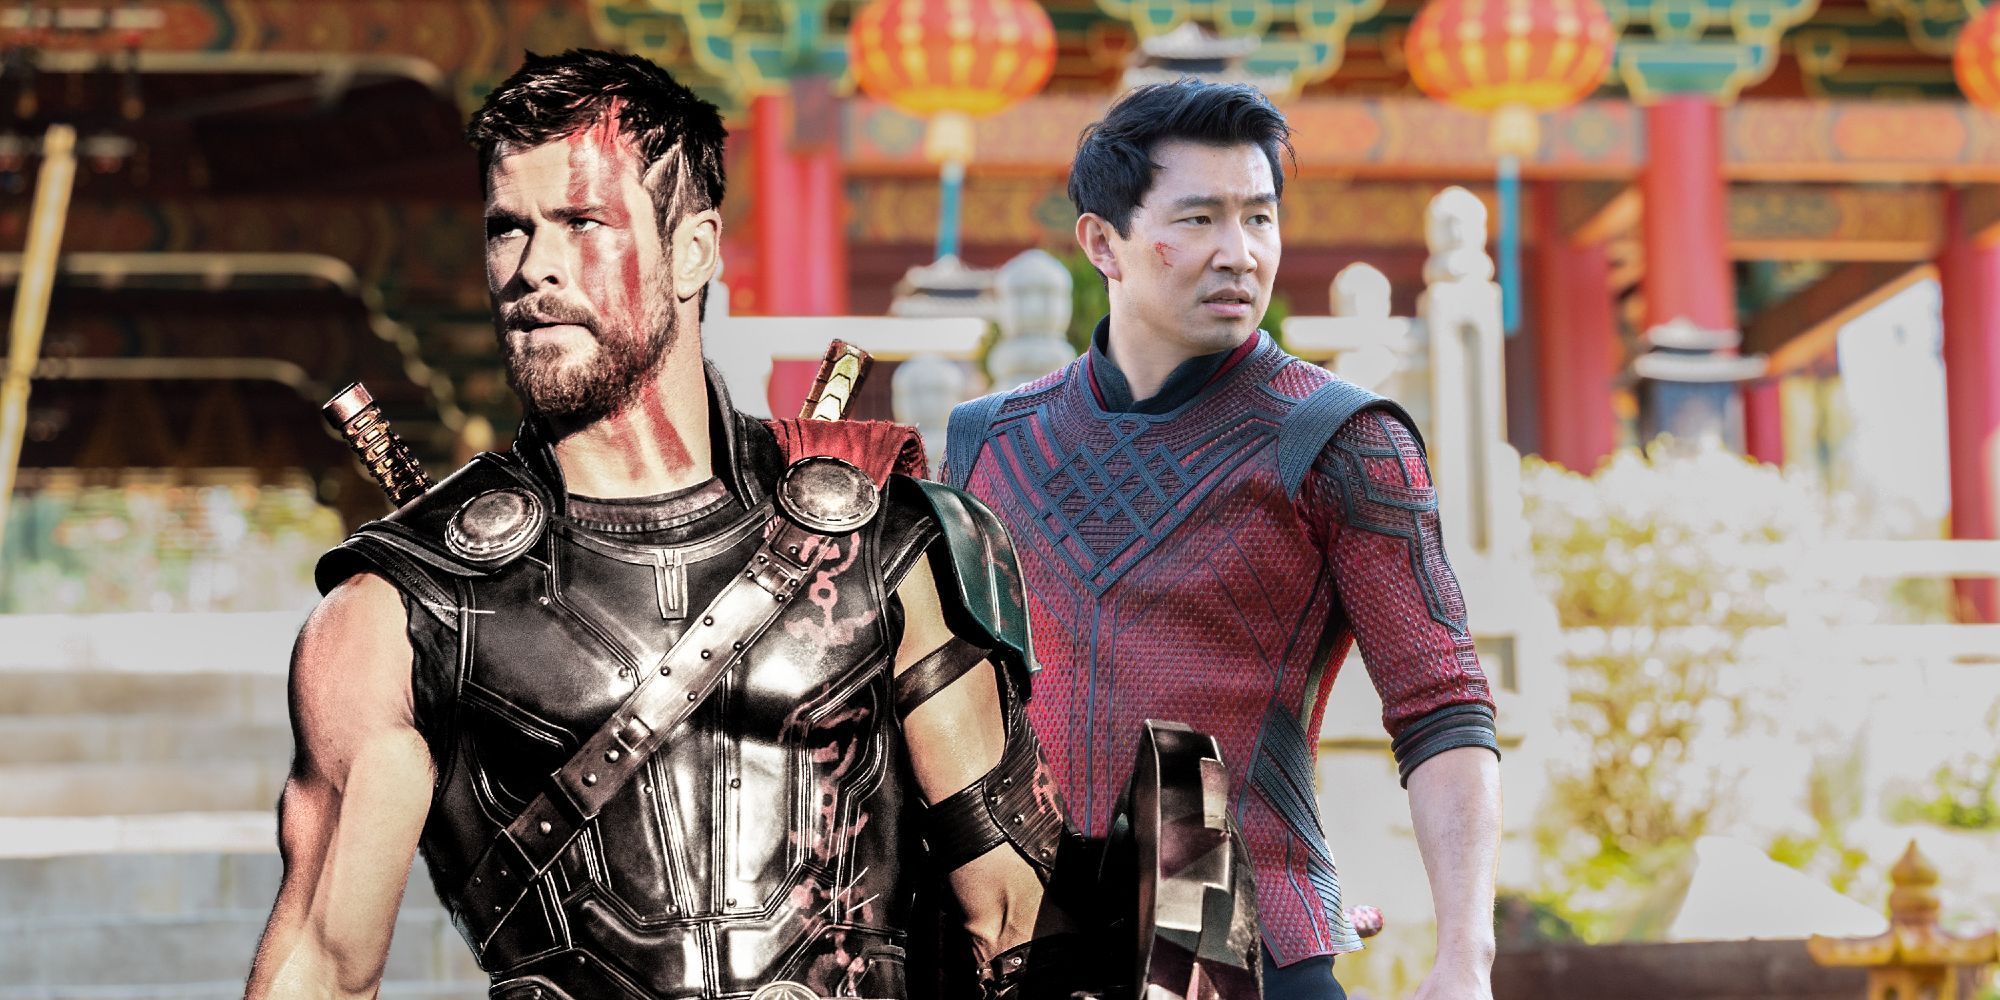 Chris Hemsworth as Thor and Simu Liu as Shang-Chi in the MCU